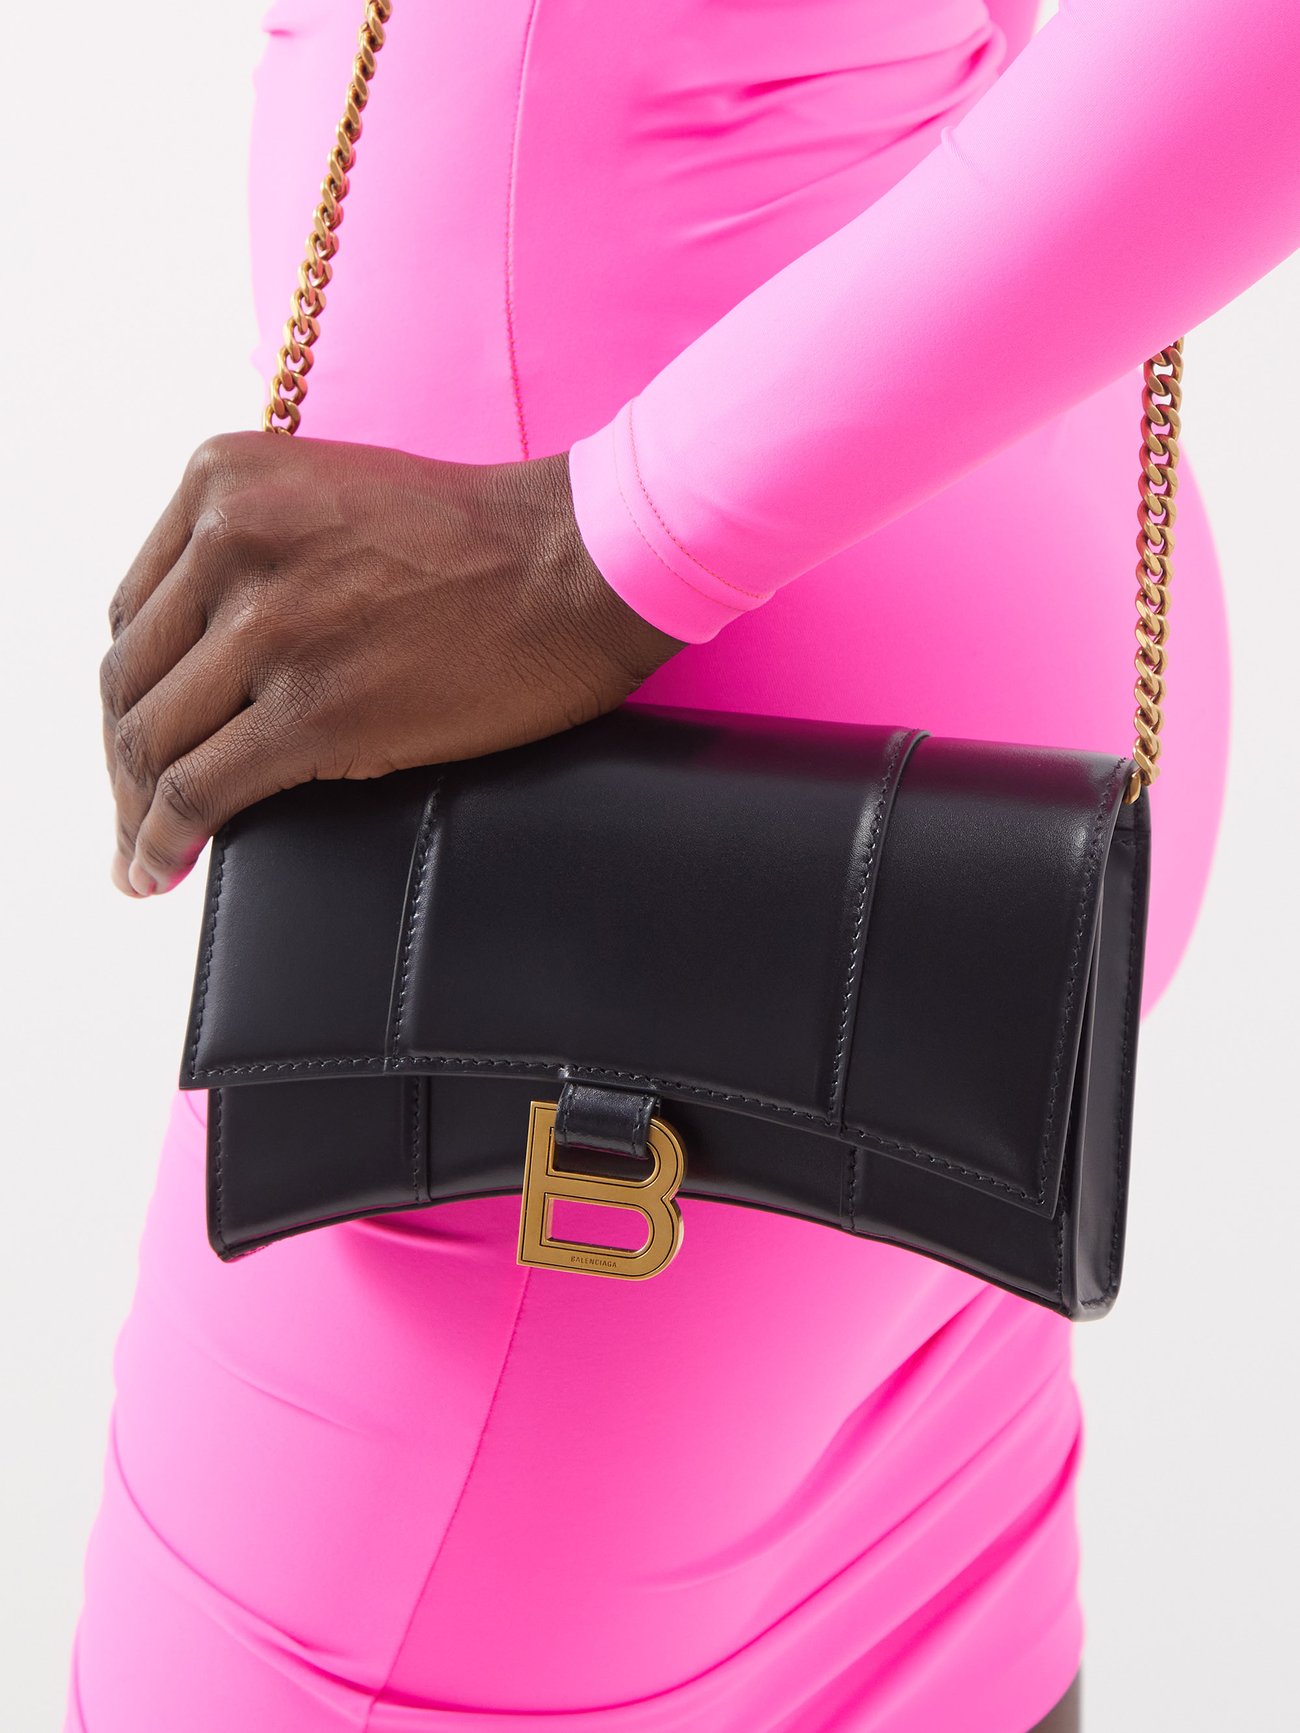 Balenciaga Women's Hourglass Mini Handbag